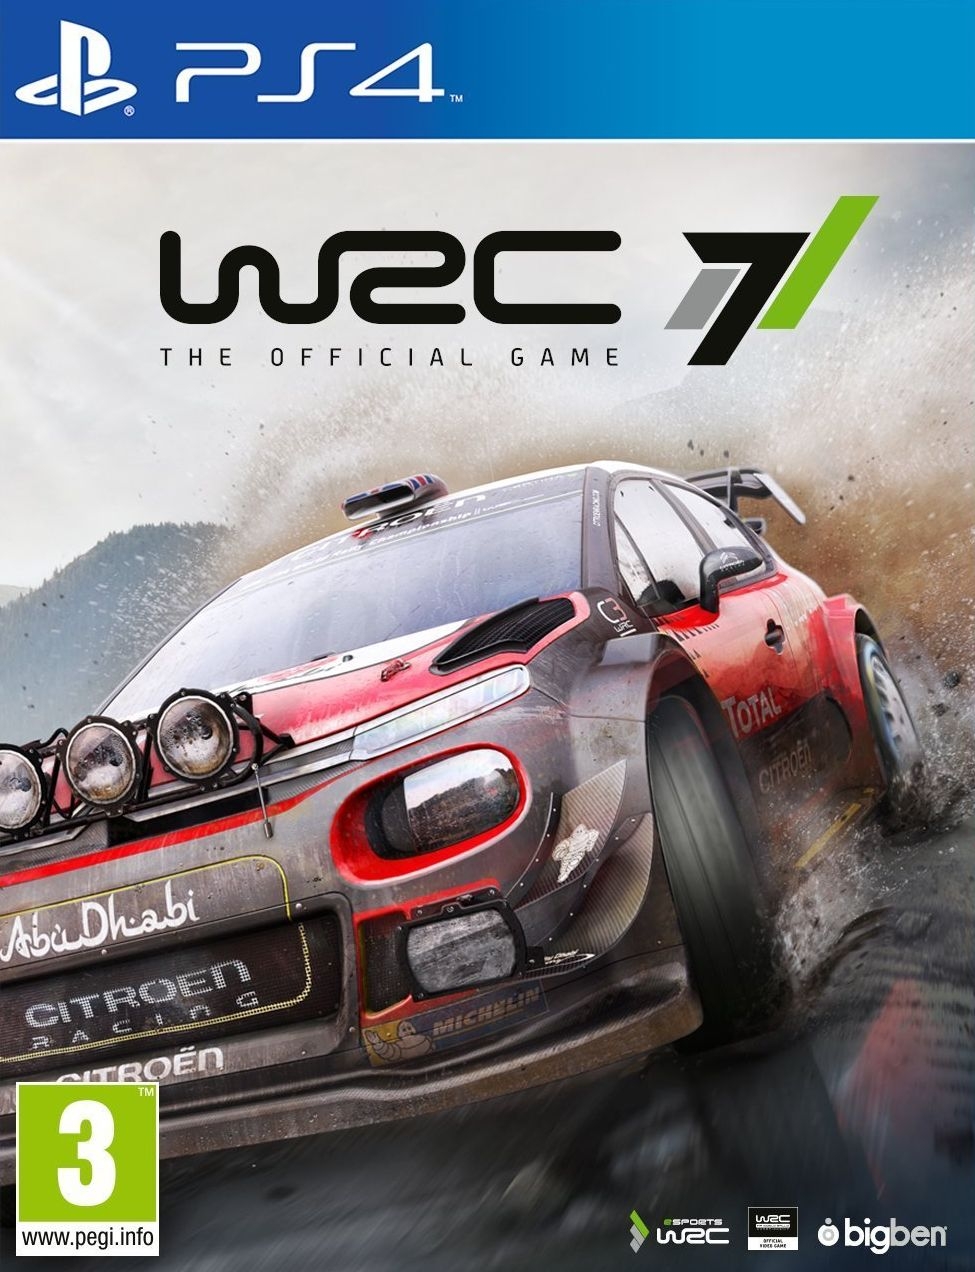 PS4 WRC 7